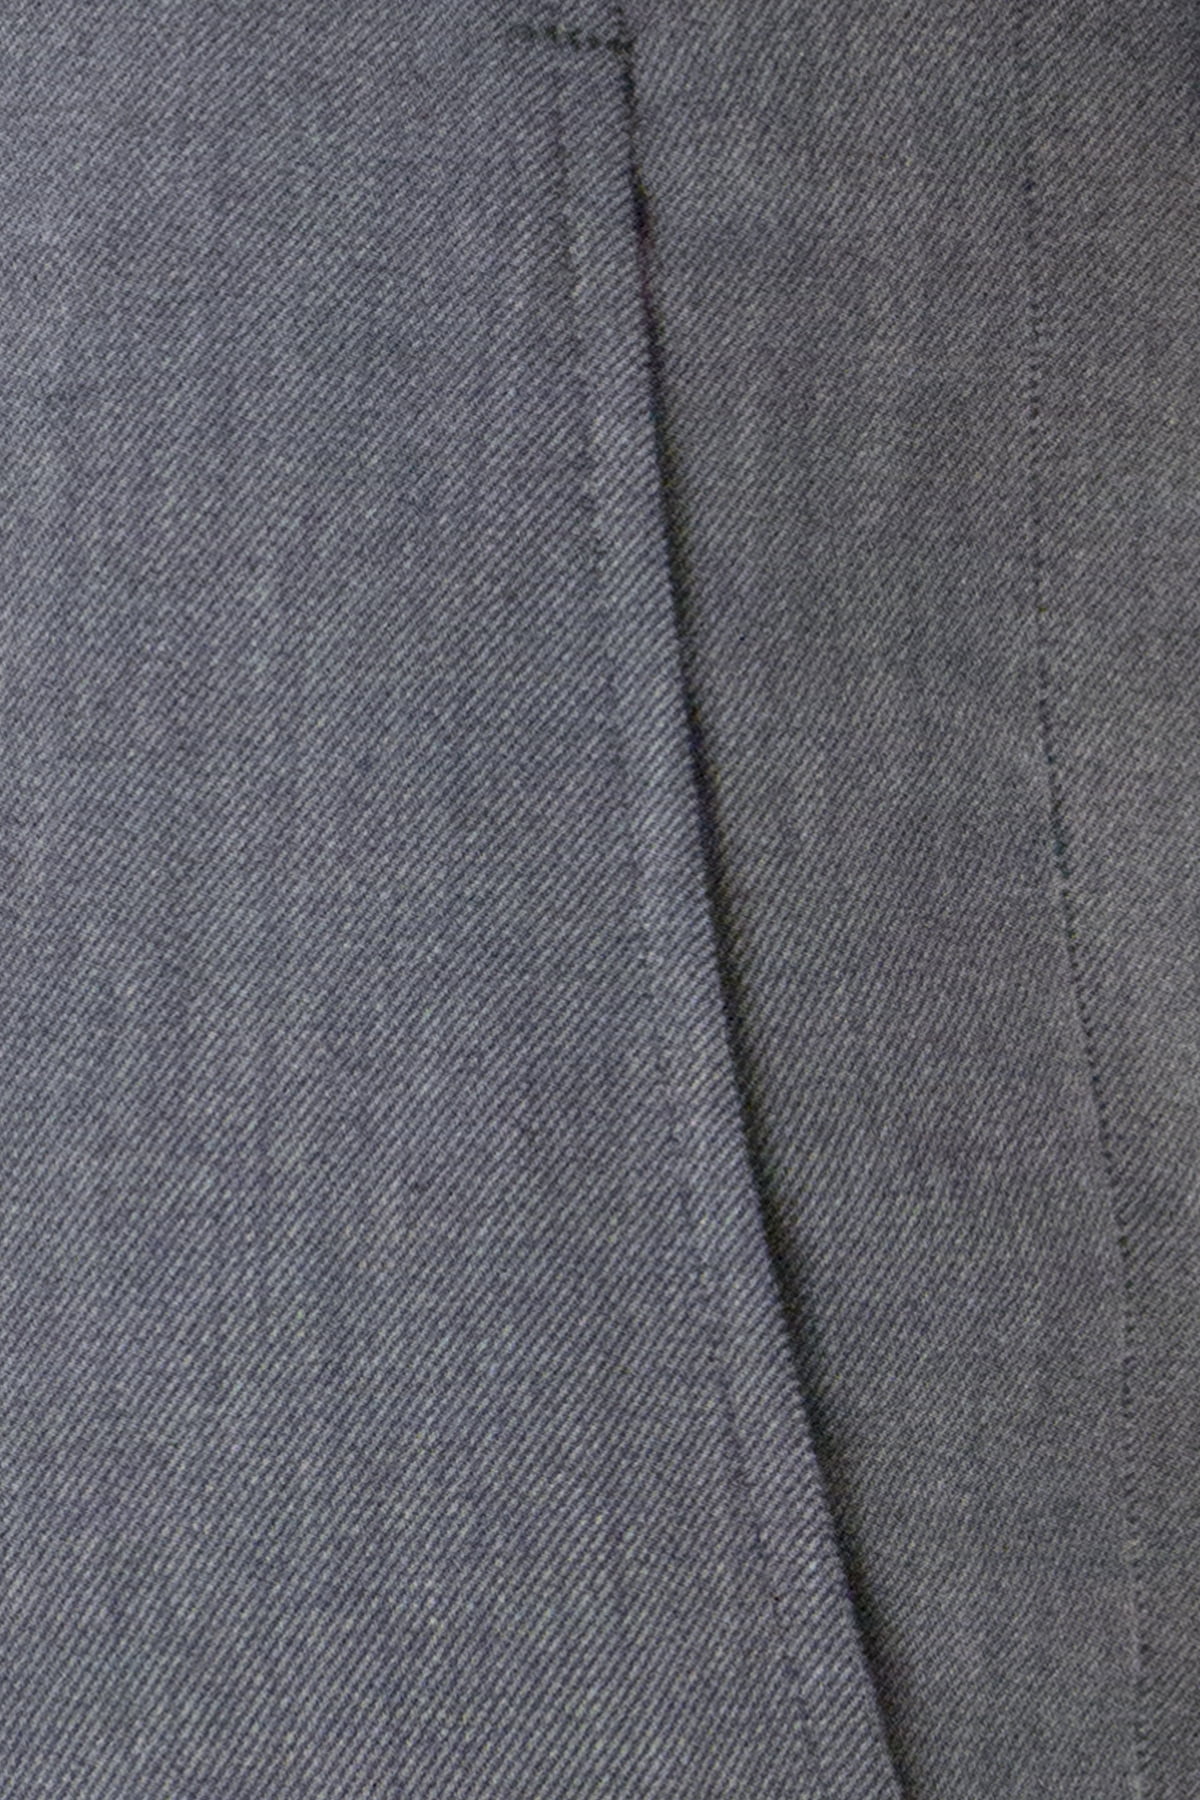 Pantalone uomo grigio chiaro in lana con tasche america e risvolto 4cm